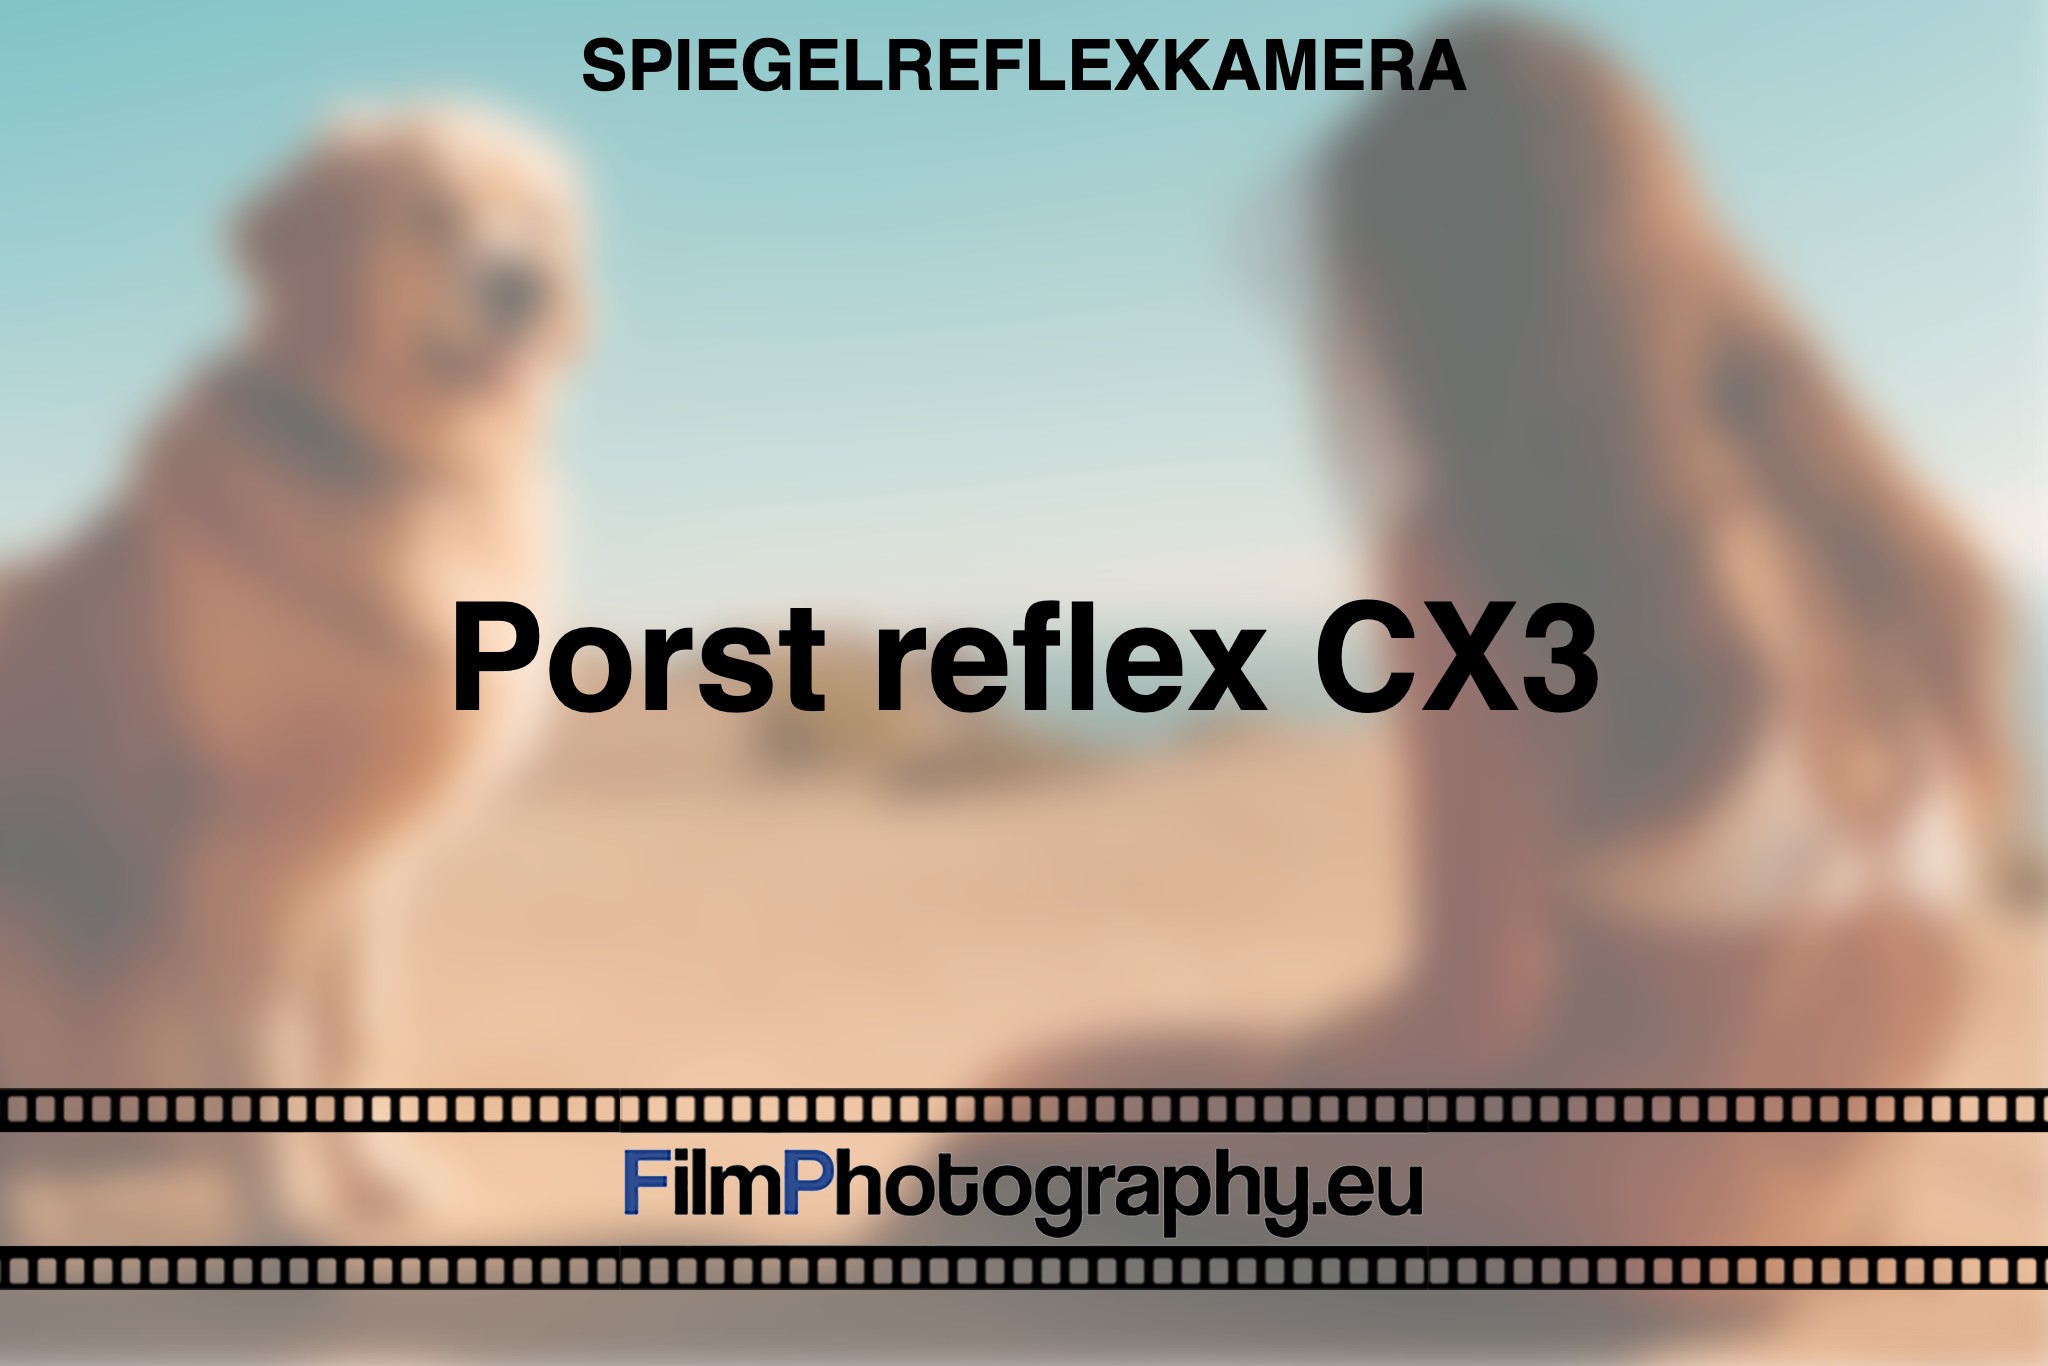 porst-reflex-cx3-spiegelreflexkamera-bnv